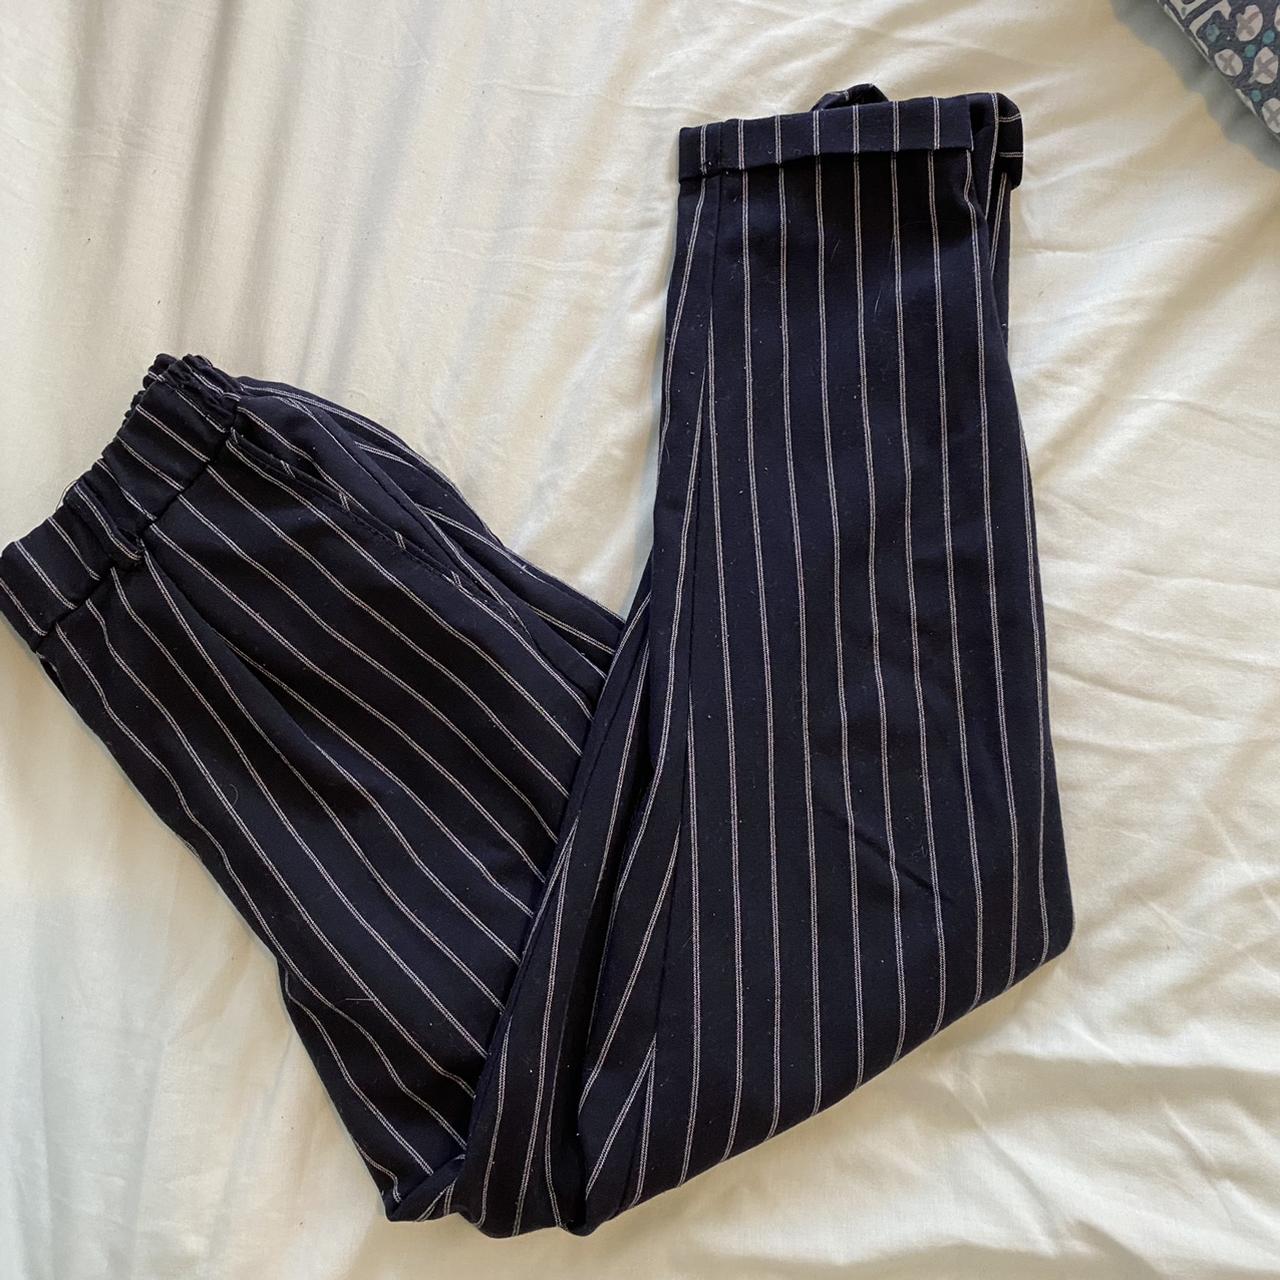 Bershka Navy Blue Pinstripe Trousers size S (would... - Depop